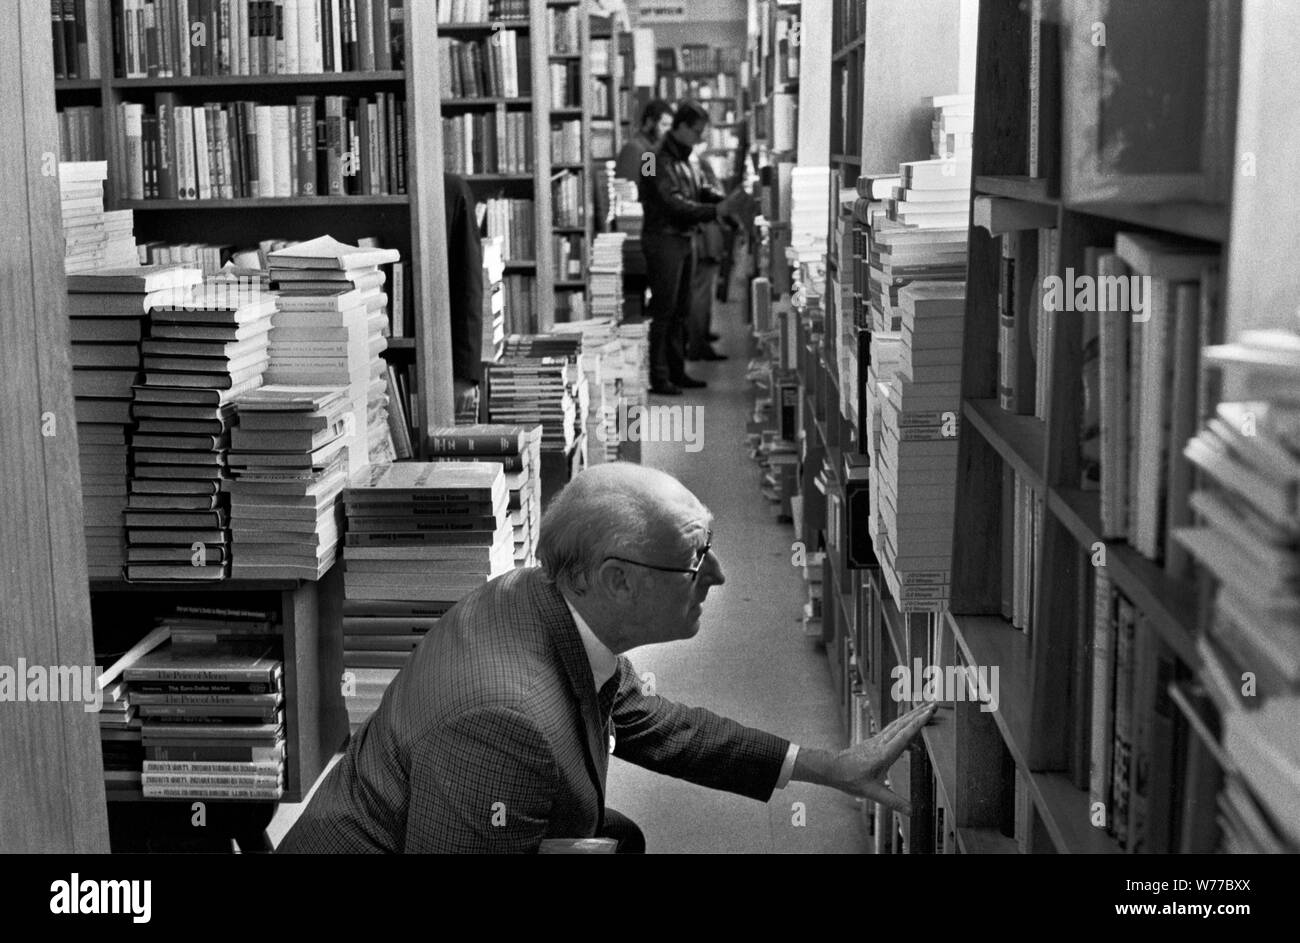 1970 librerie gente che naviga selezionando libri affollato occupato Londra libro negozio 70s UK HOMER SYKES Foto Stock